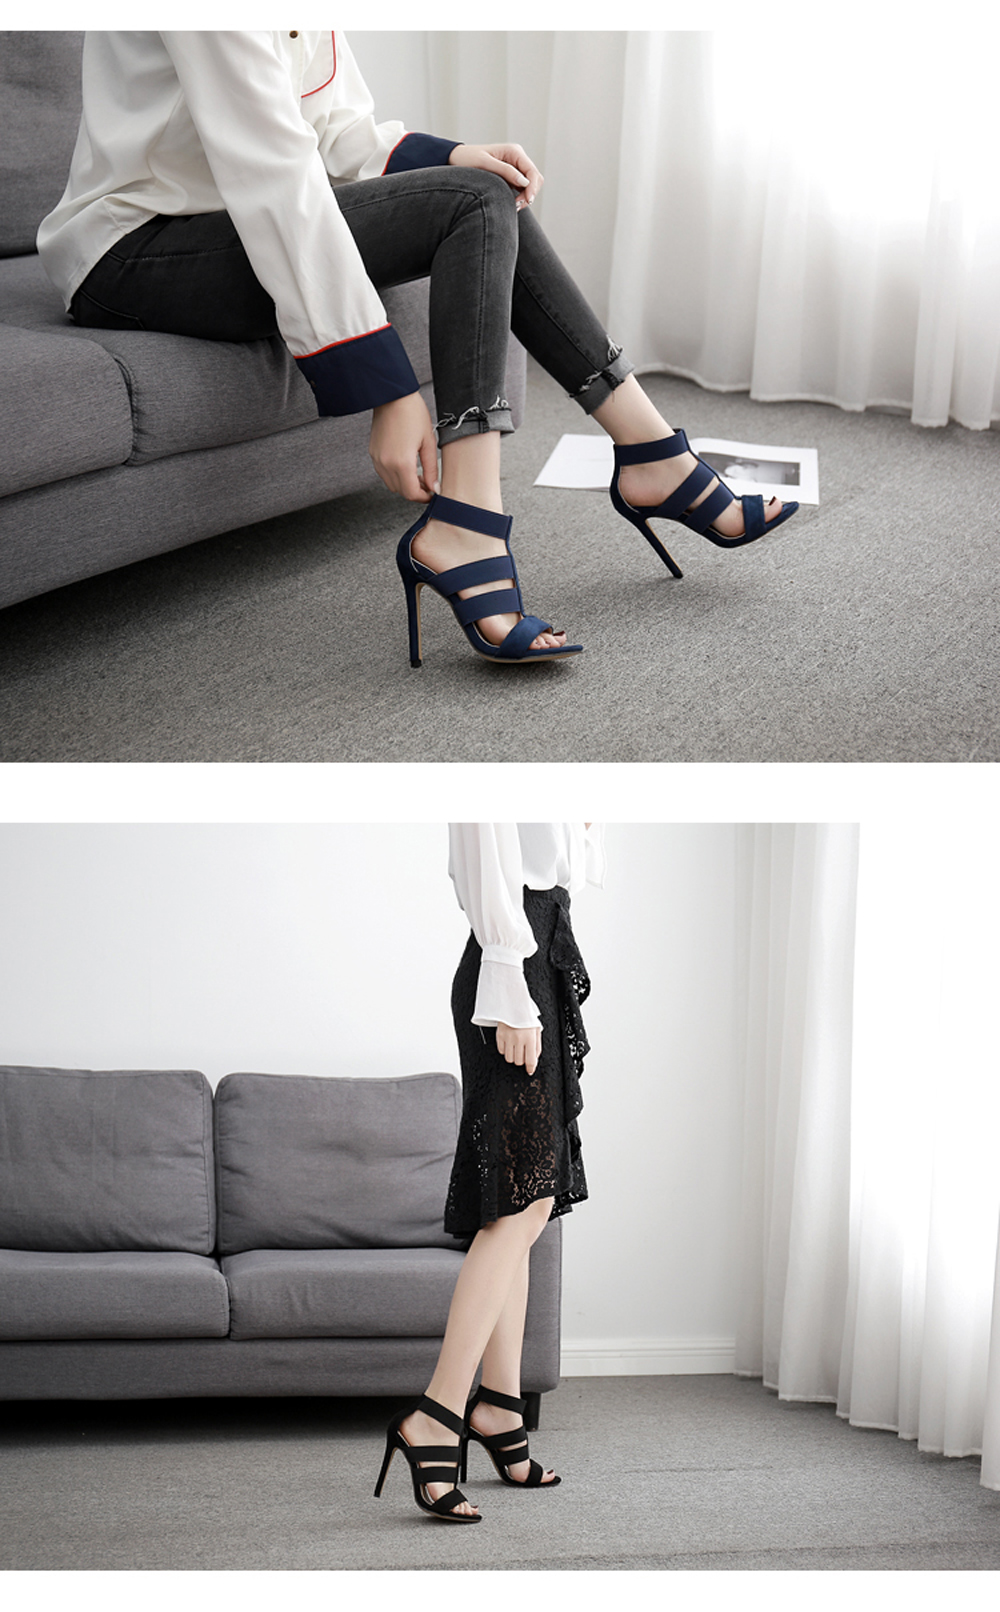 Women's Stiletto Sandals Sexy High Heels